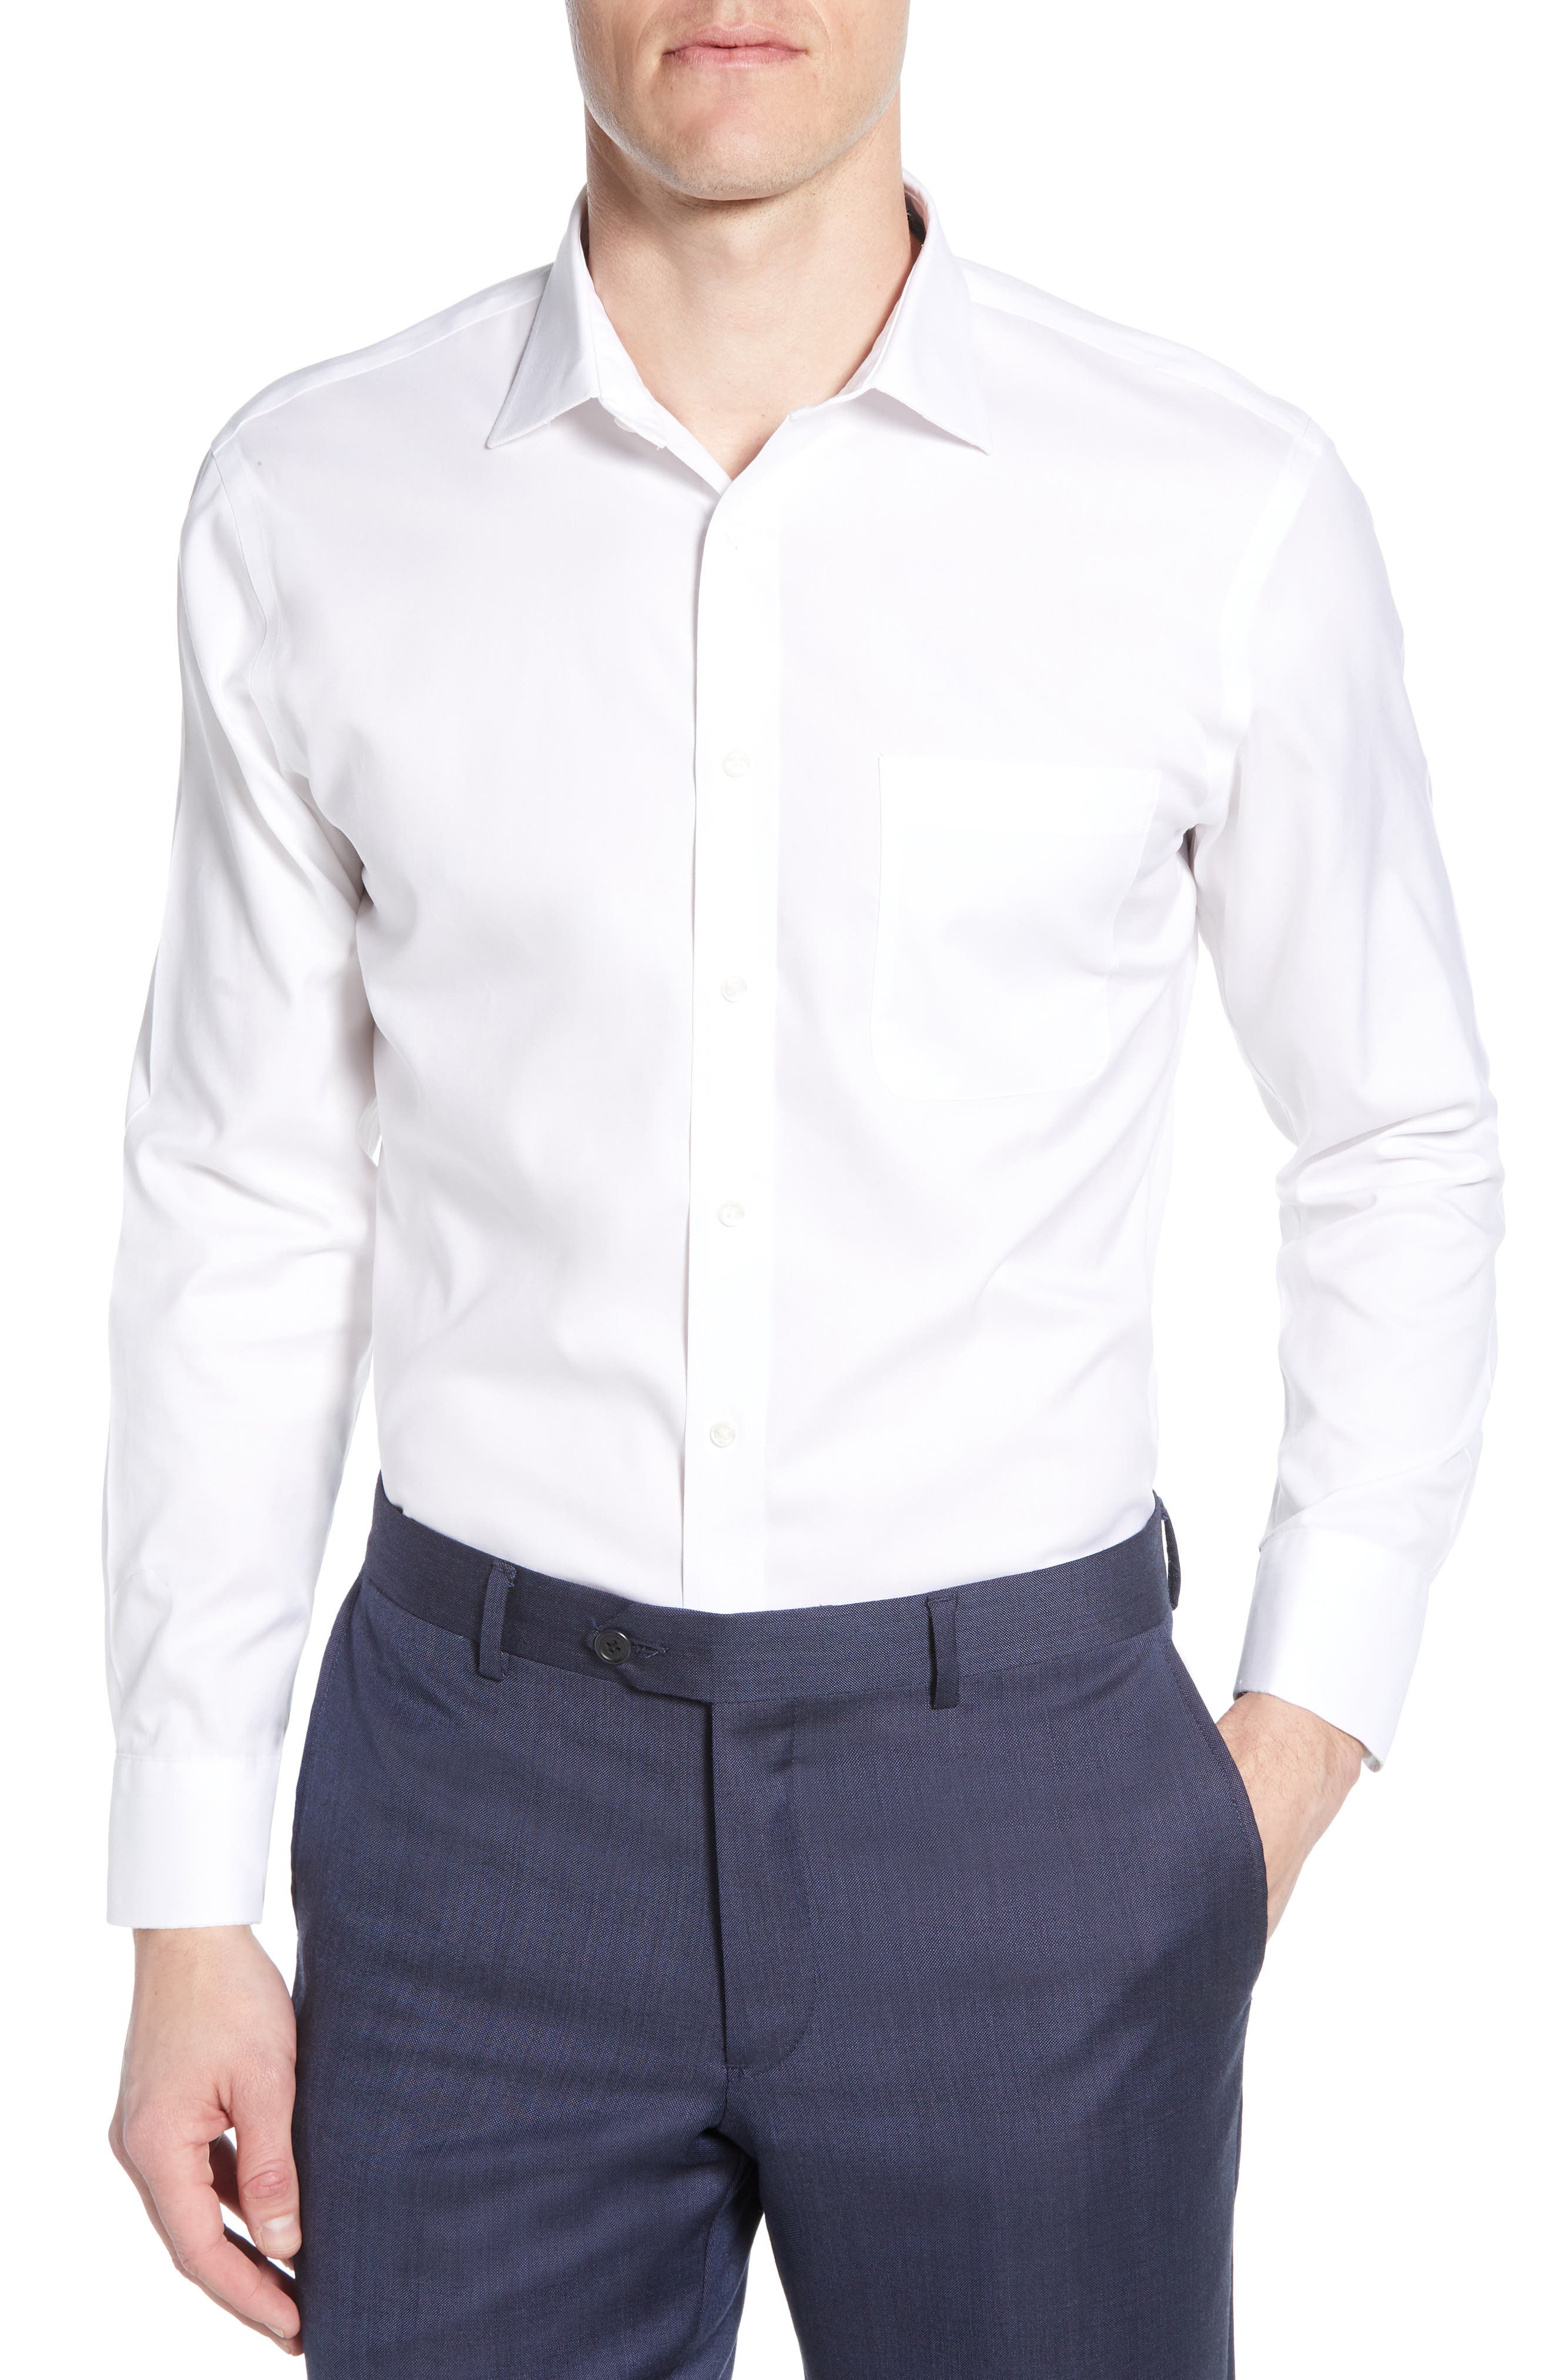 Men's White Button Down ☀ Dress Shirts ...